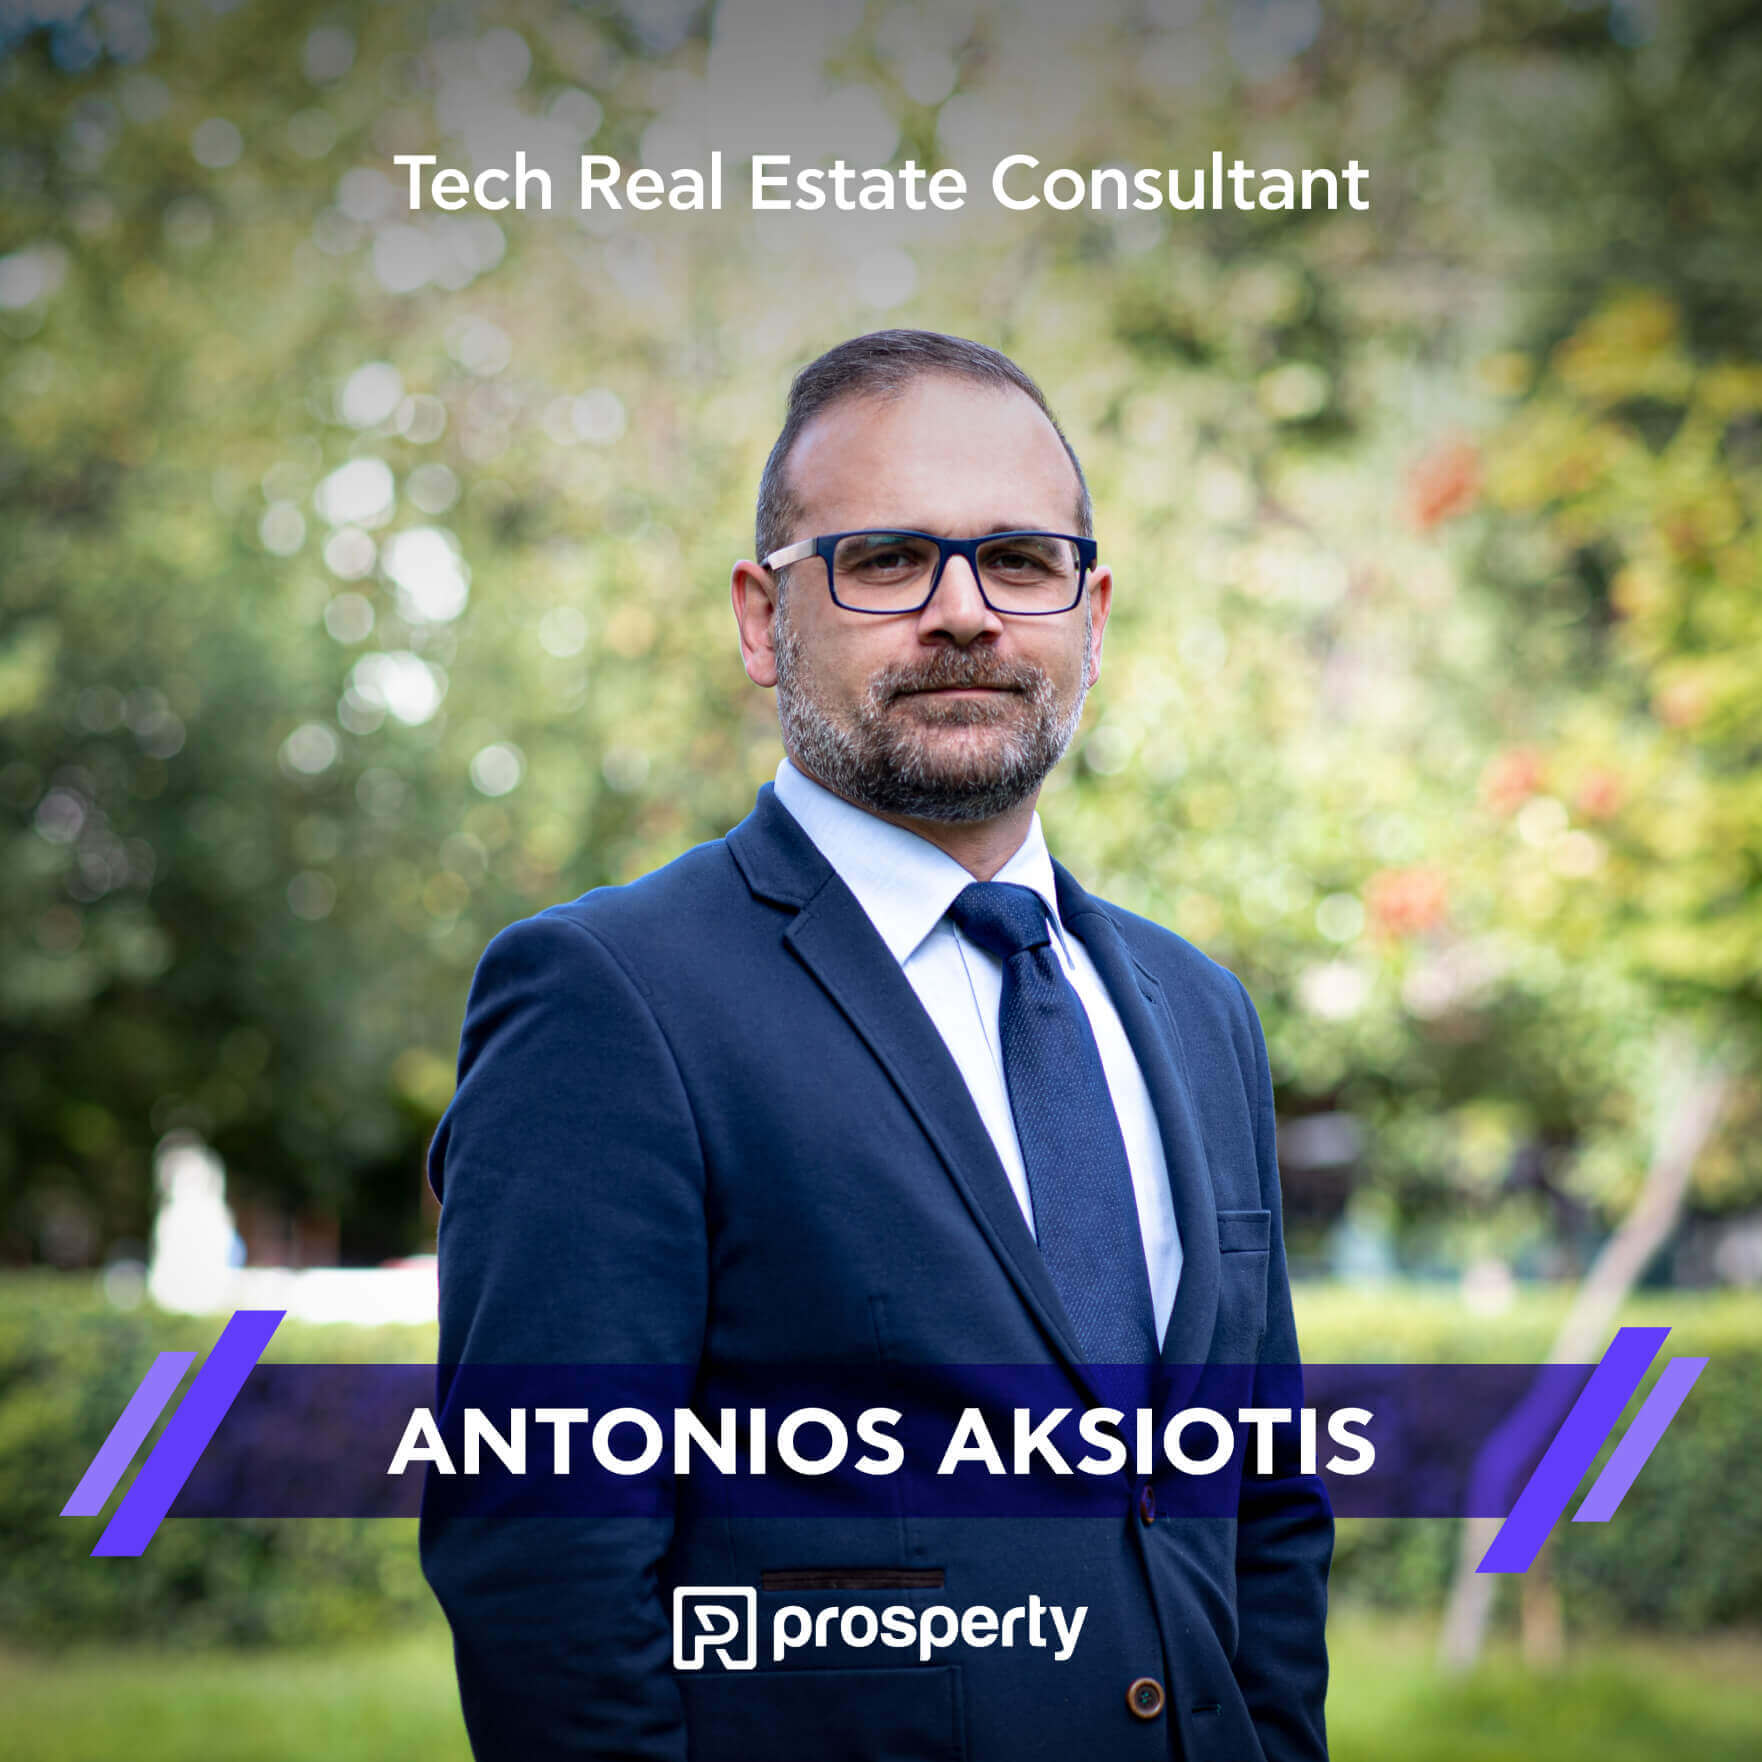 Antonios Aksiotis | Tech Real Estate Consultant